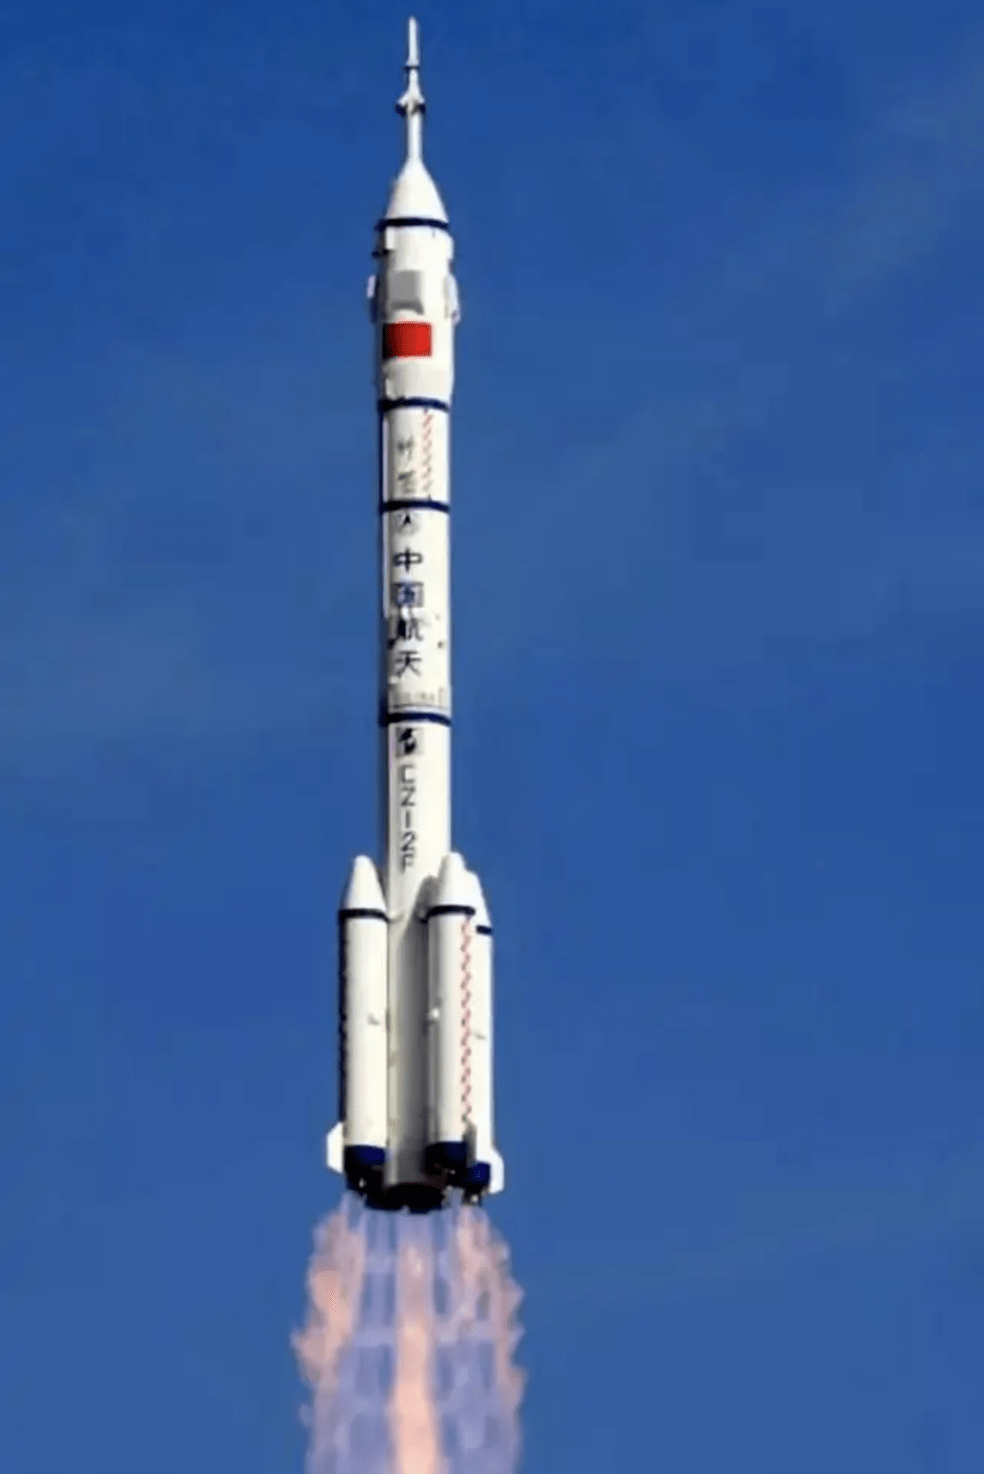 2013年6月11日17时38分  运载火箭: 长征二号f遥十火箭  发射地点